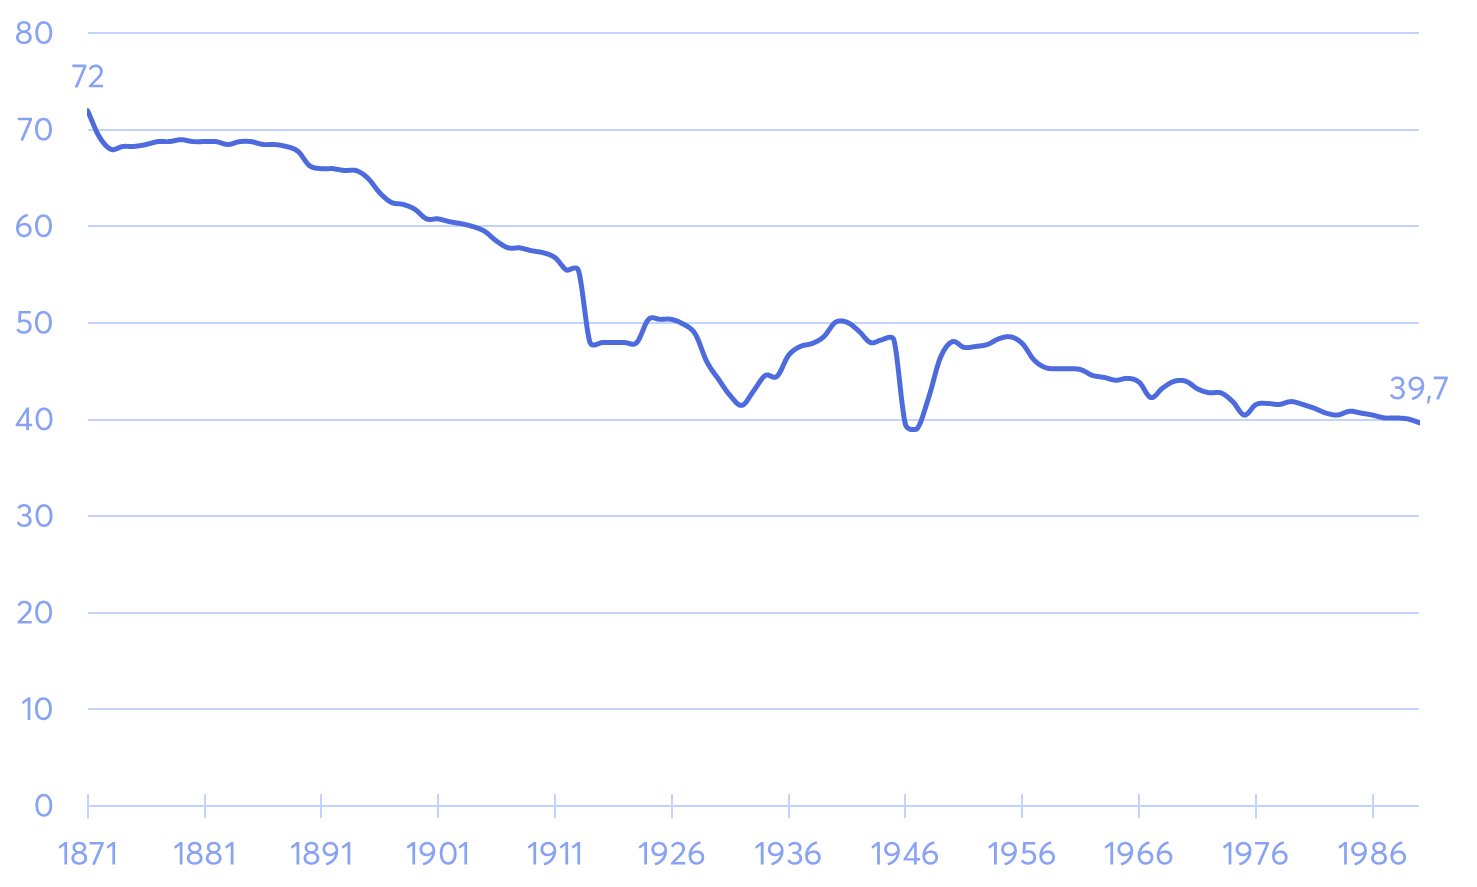 Wochenarbeitszeit in Deutschland zwischen 1871 und 1990